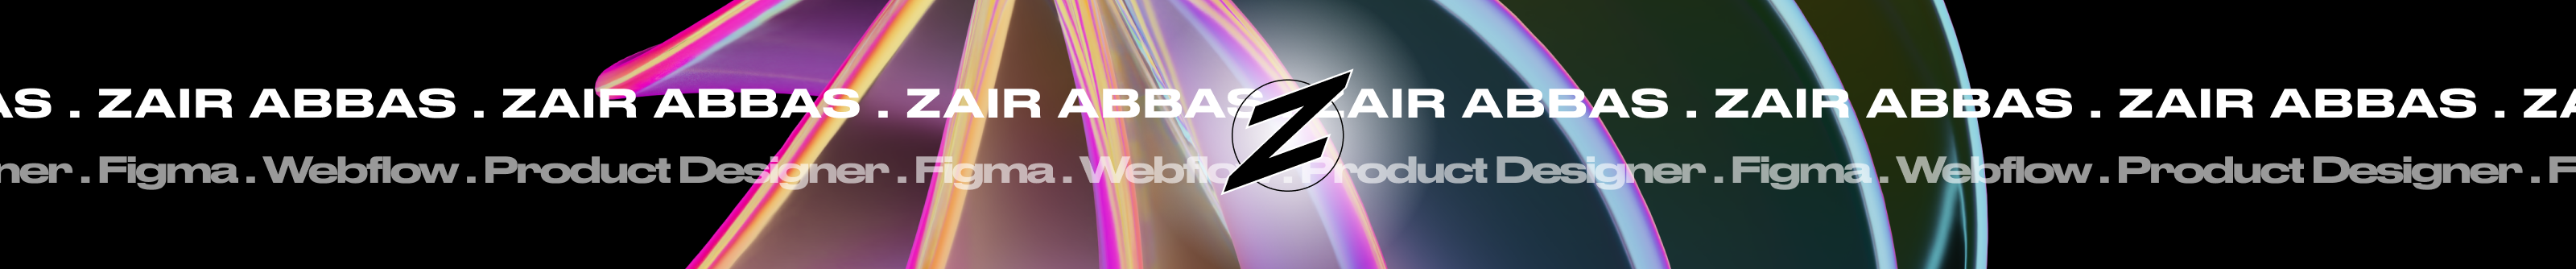 Banner de perfil de Zair Abbas